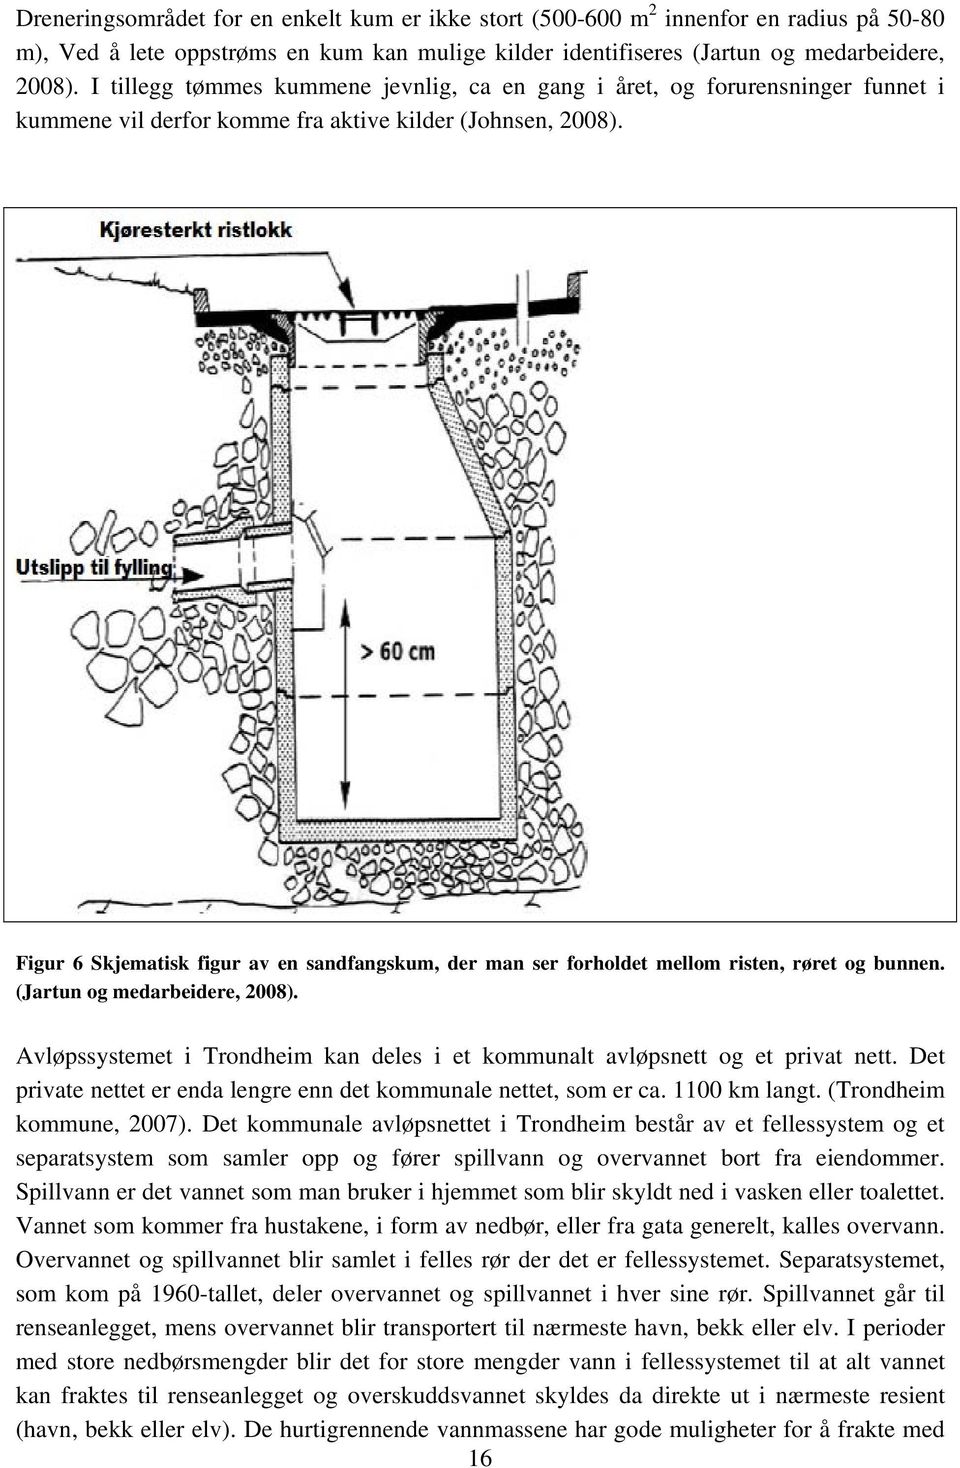 Figur 6 Skjematisk figur av en sandfangskum, der man ser forholdet mellom risten, røret og bunnen. (Jartun og medarbeidere, 2008).